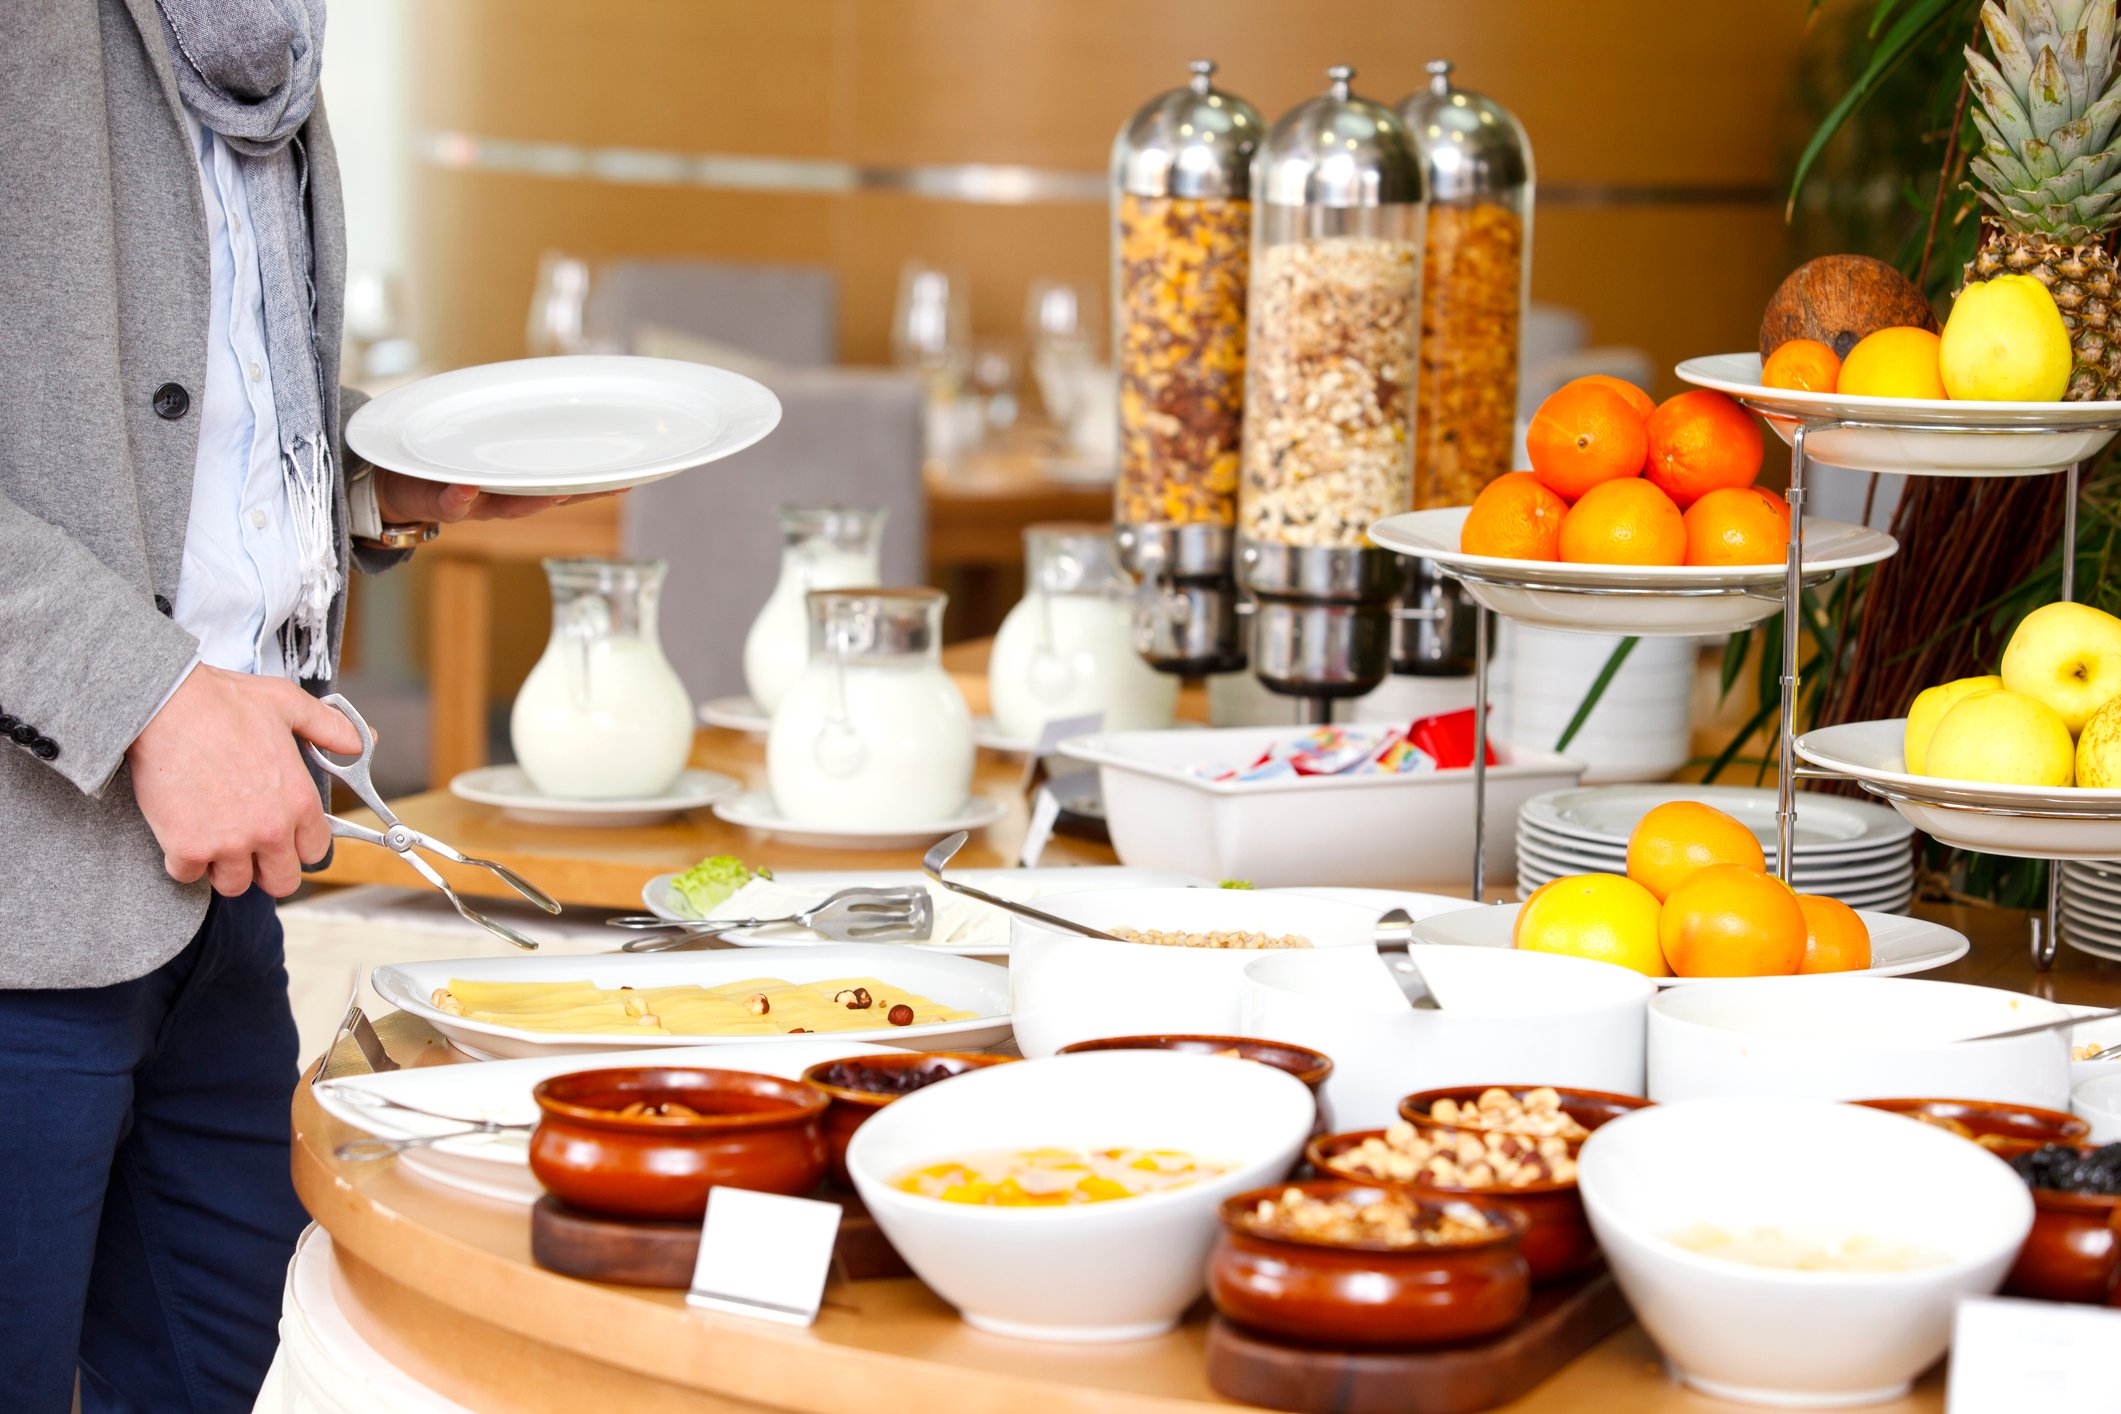 Hotel breakfast buffet